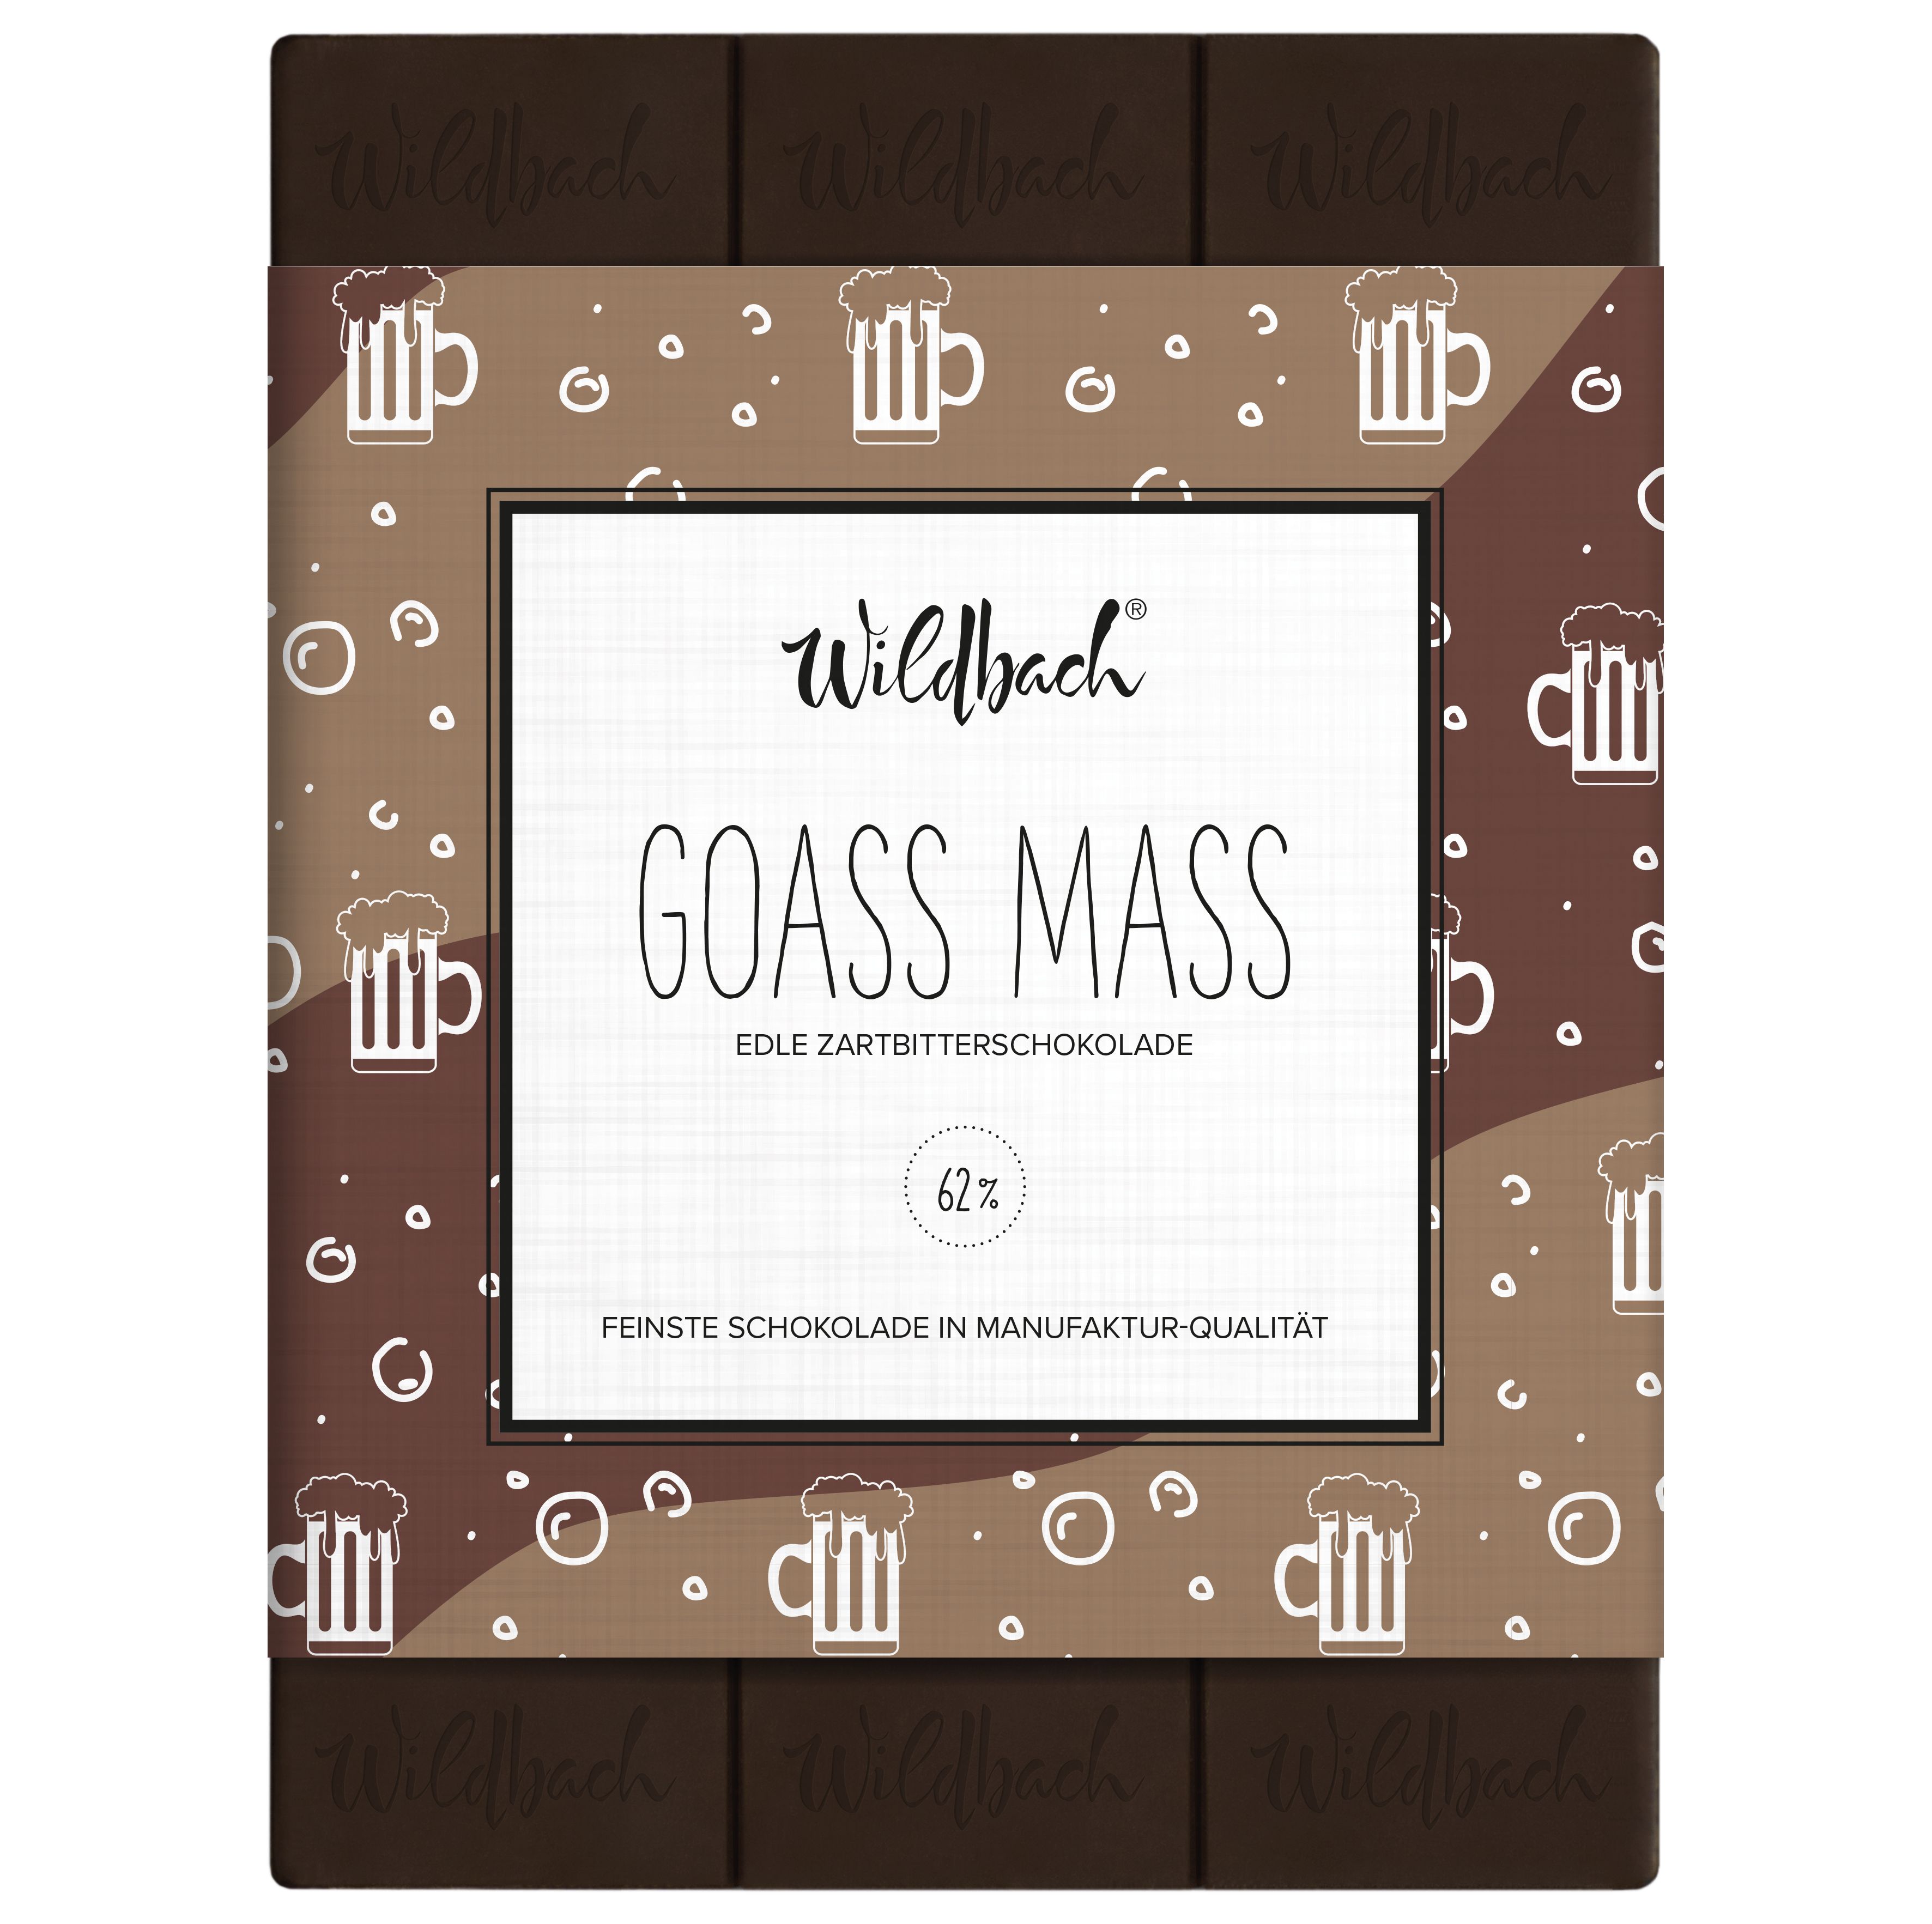 70g Tafel Edle Zartbitterschokolade 62% Goass Mass